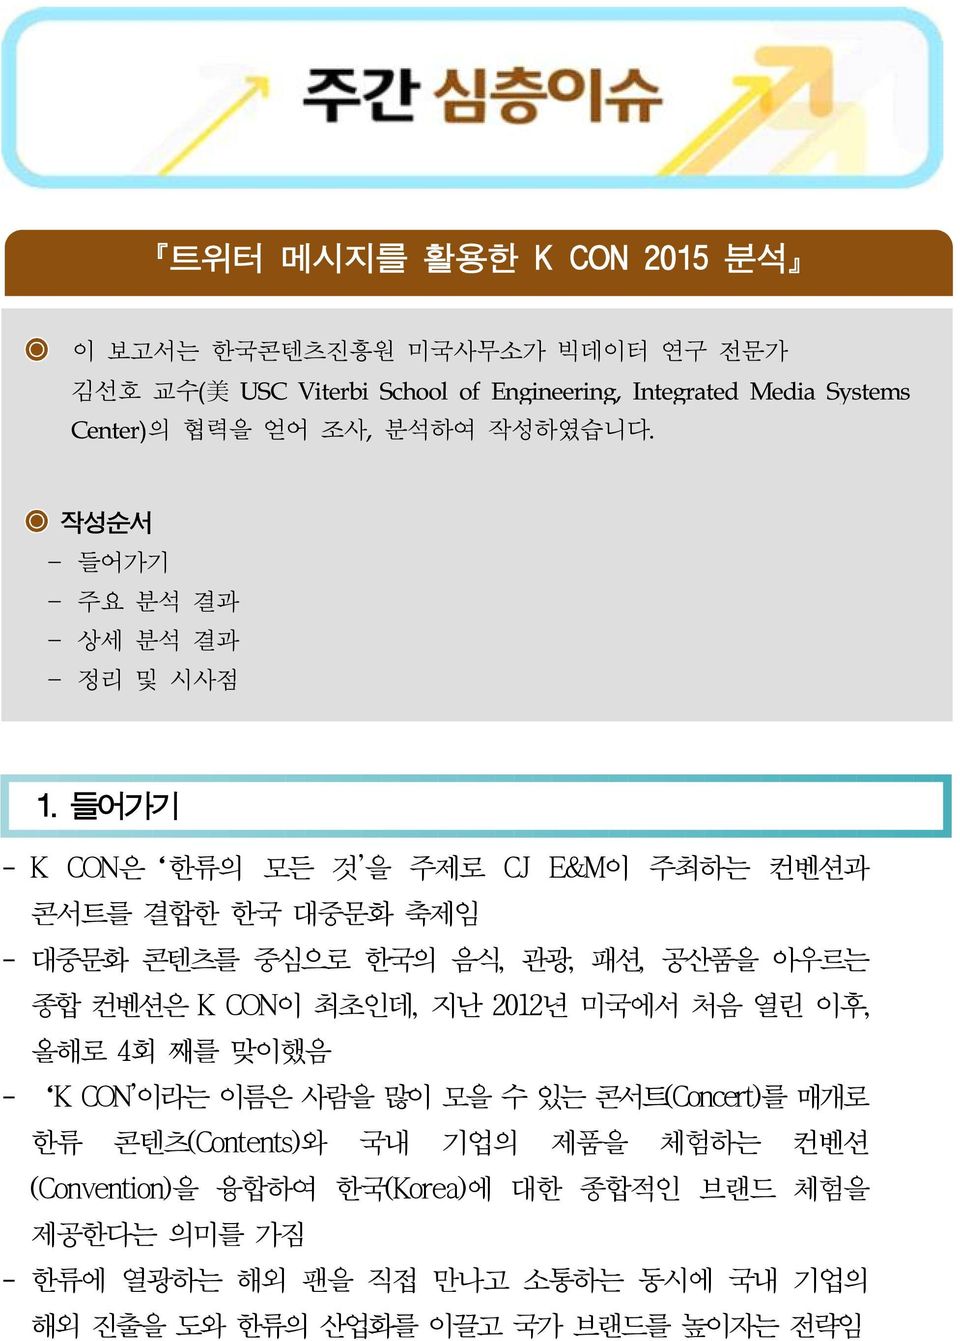 들어가기 - K CON은 한류의 모든 것'을 주제로 CJ E&M이 주최하는 컨벤션과 콘서트를 결합한 한국 대중문화 축제임 - 대중문화 콘텐츠를 중심으로 한국의 음식, 관광, 패션, 공산품을 아우르는 종합 컨벤션은 K CON이 최초인데, 지난 2012년 미국에서 처음